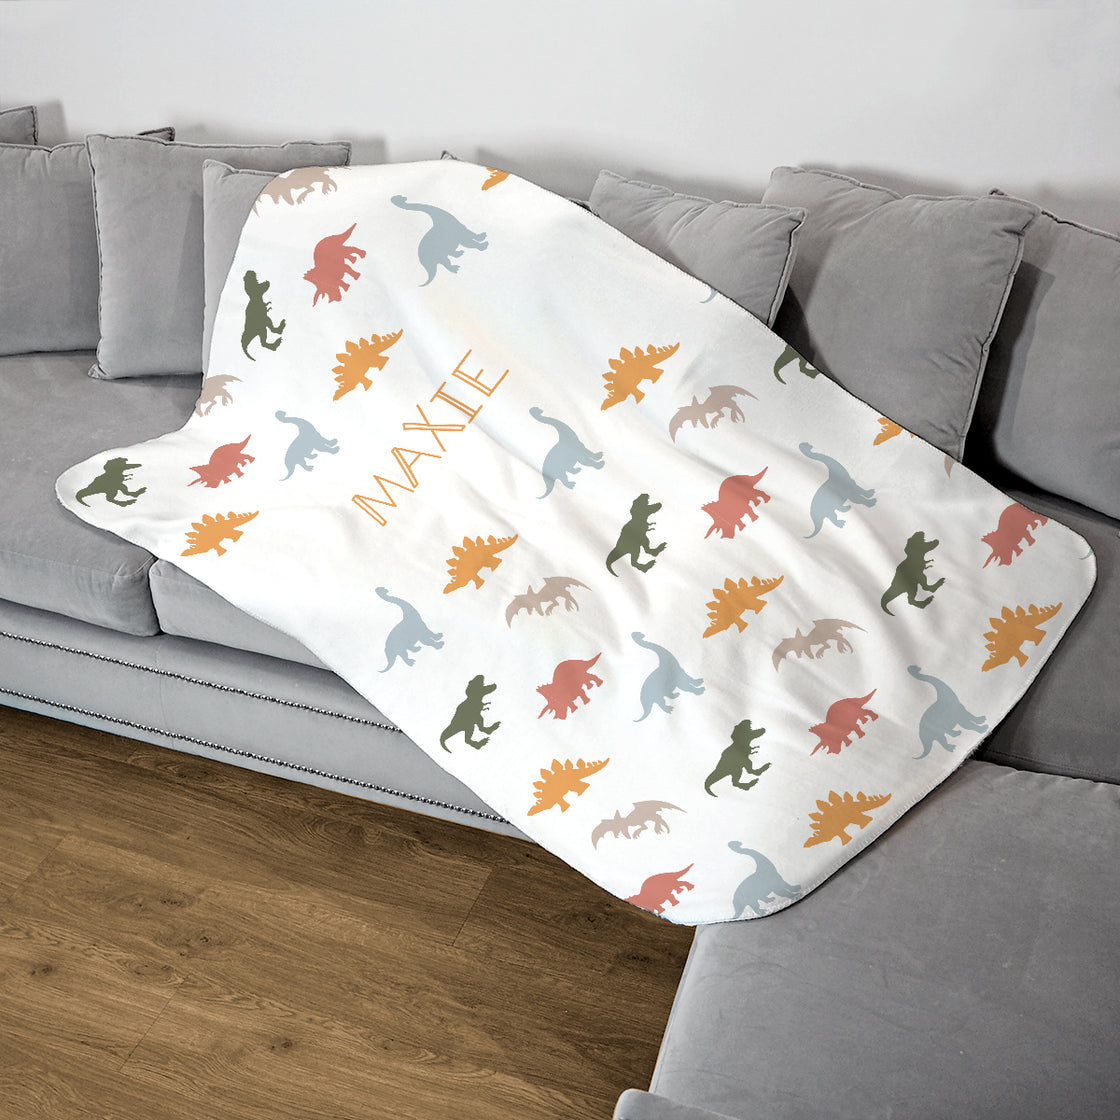 Personalised Childrens Blanket - Pastel Dinosaur Print - Fleece Blanket - Custom Gifts 